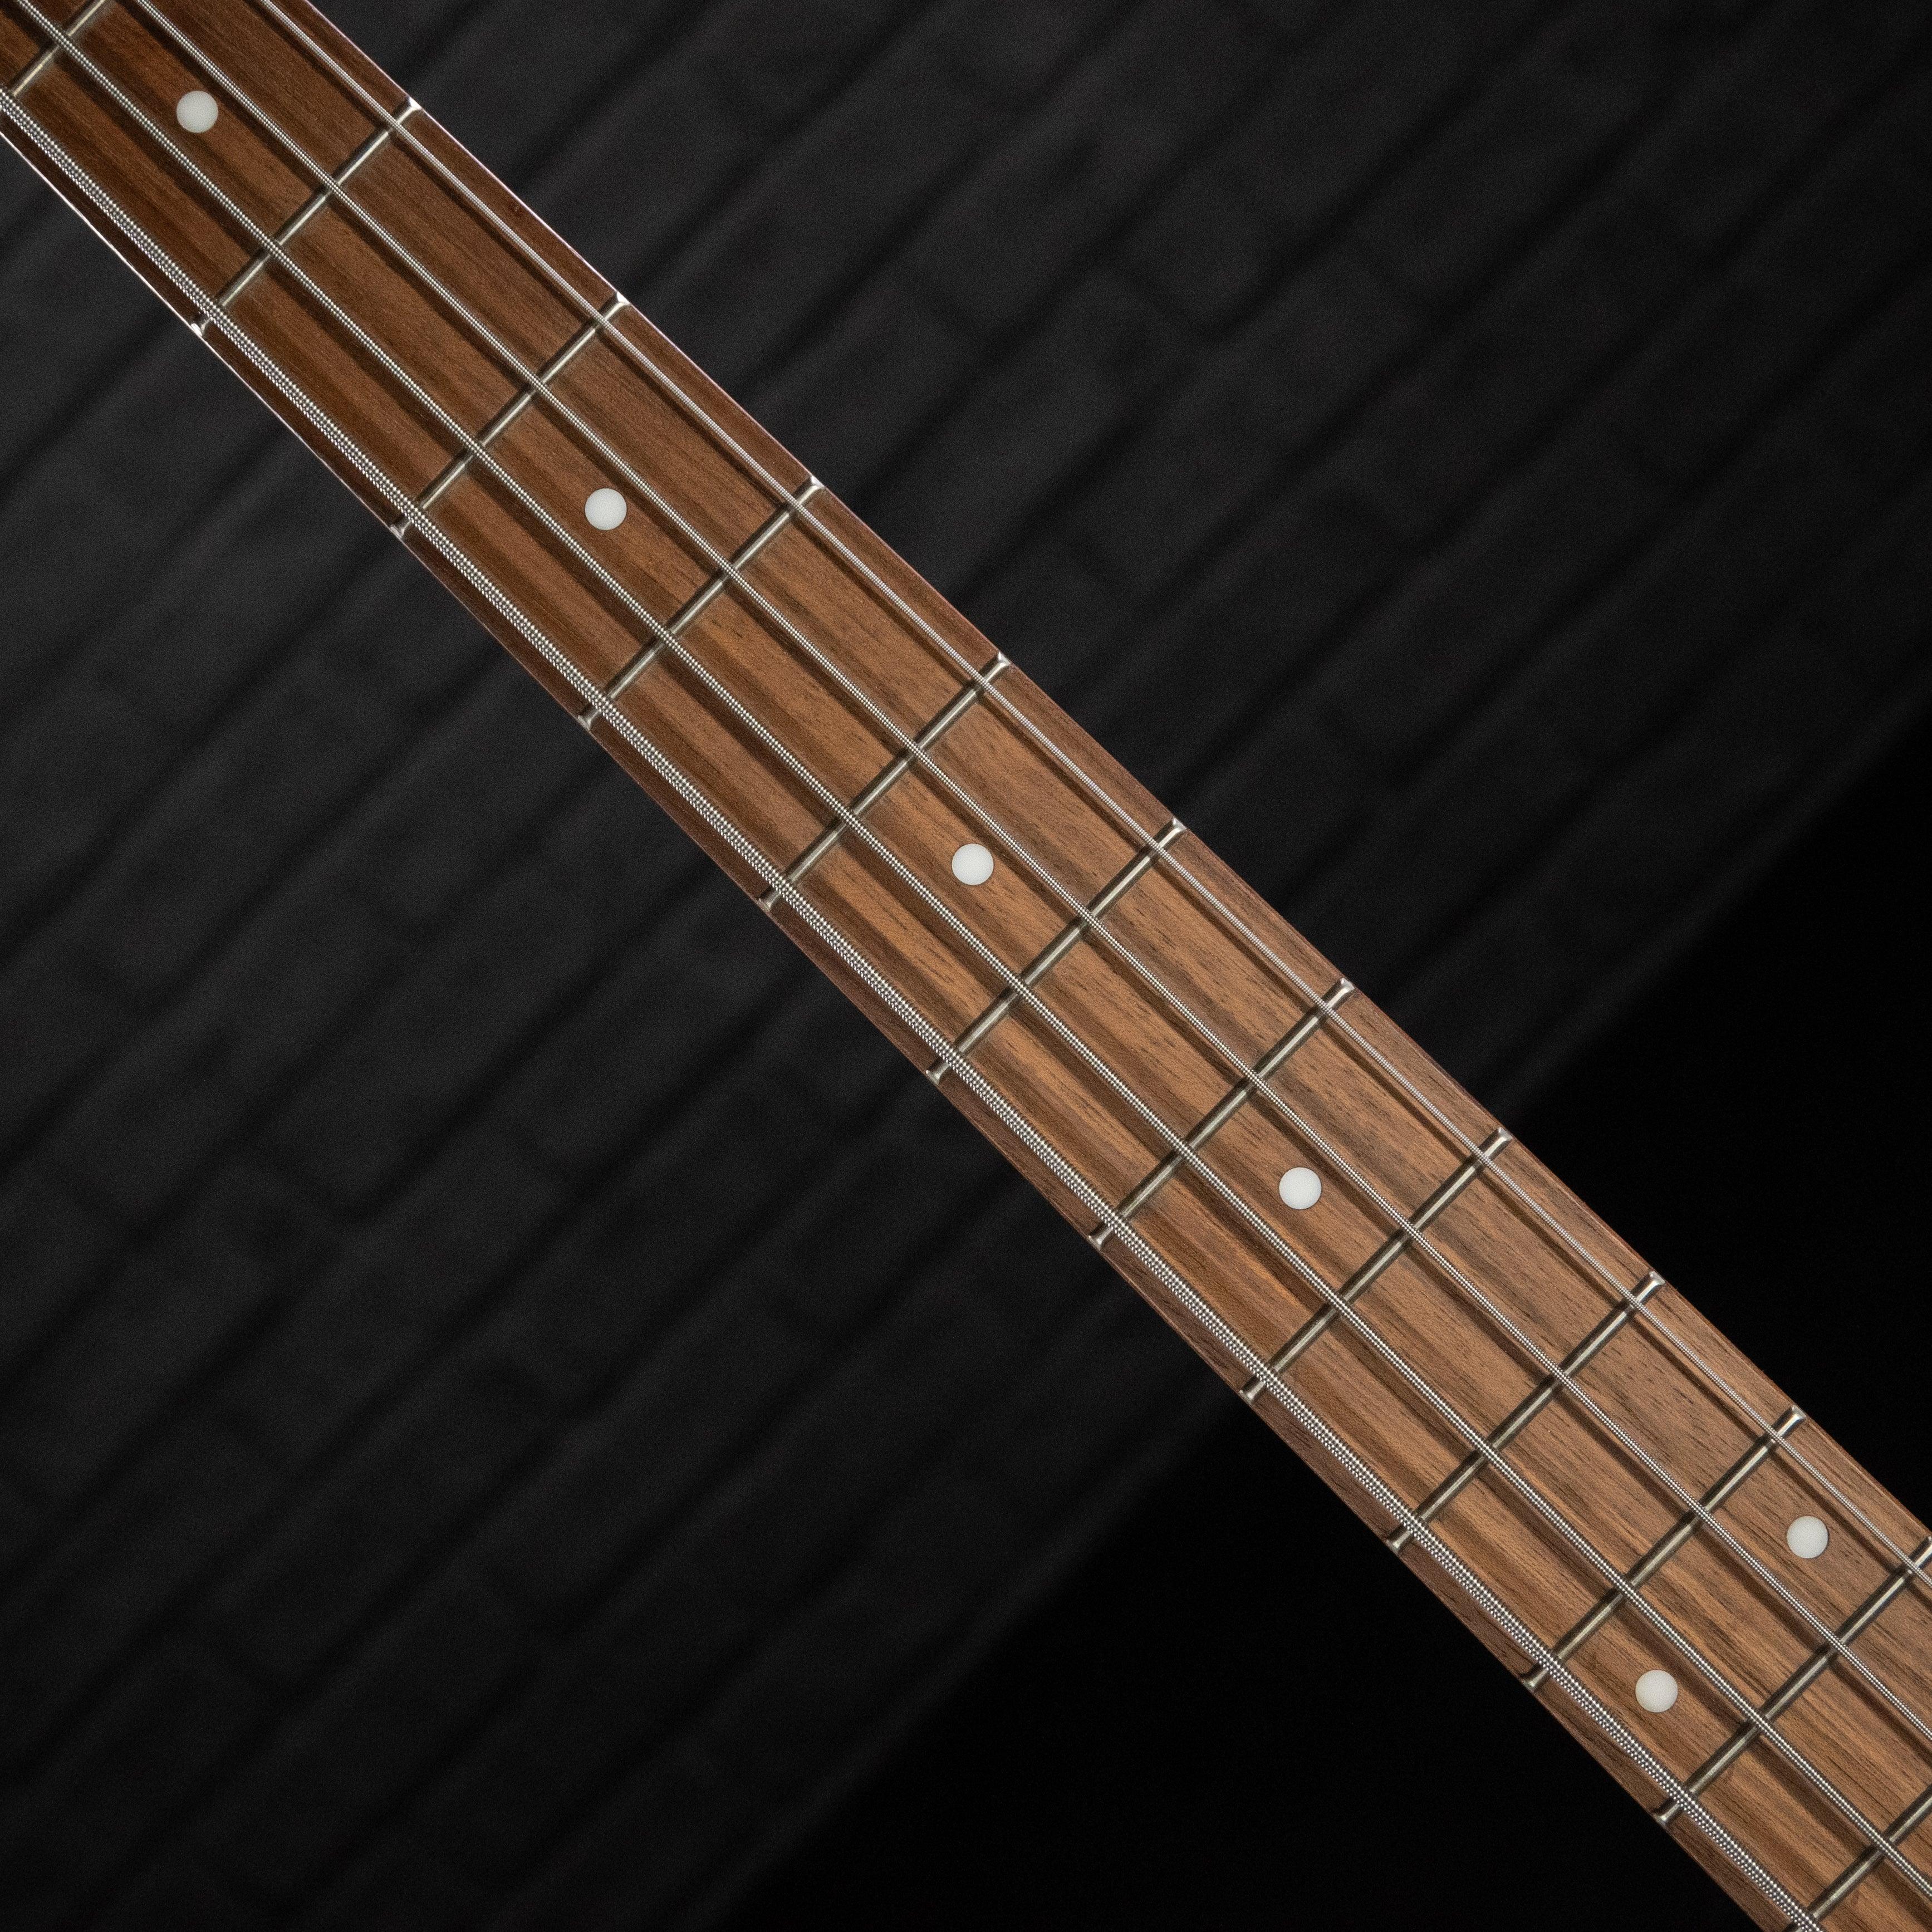 Ibanez GSR200SMNGT 4-String Bass Guitar (Natural Grey Burst) - Impulse Music Co.